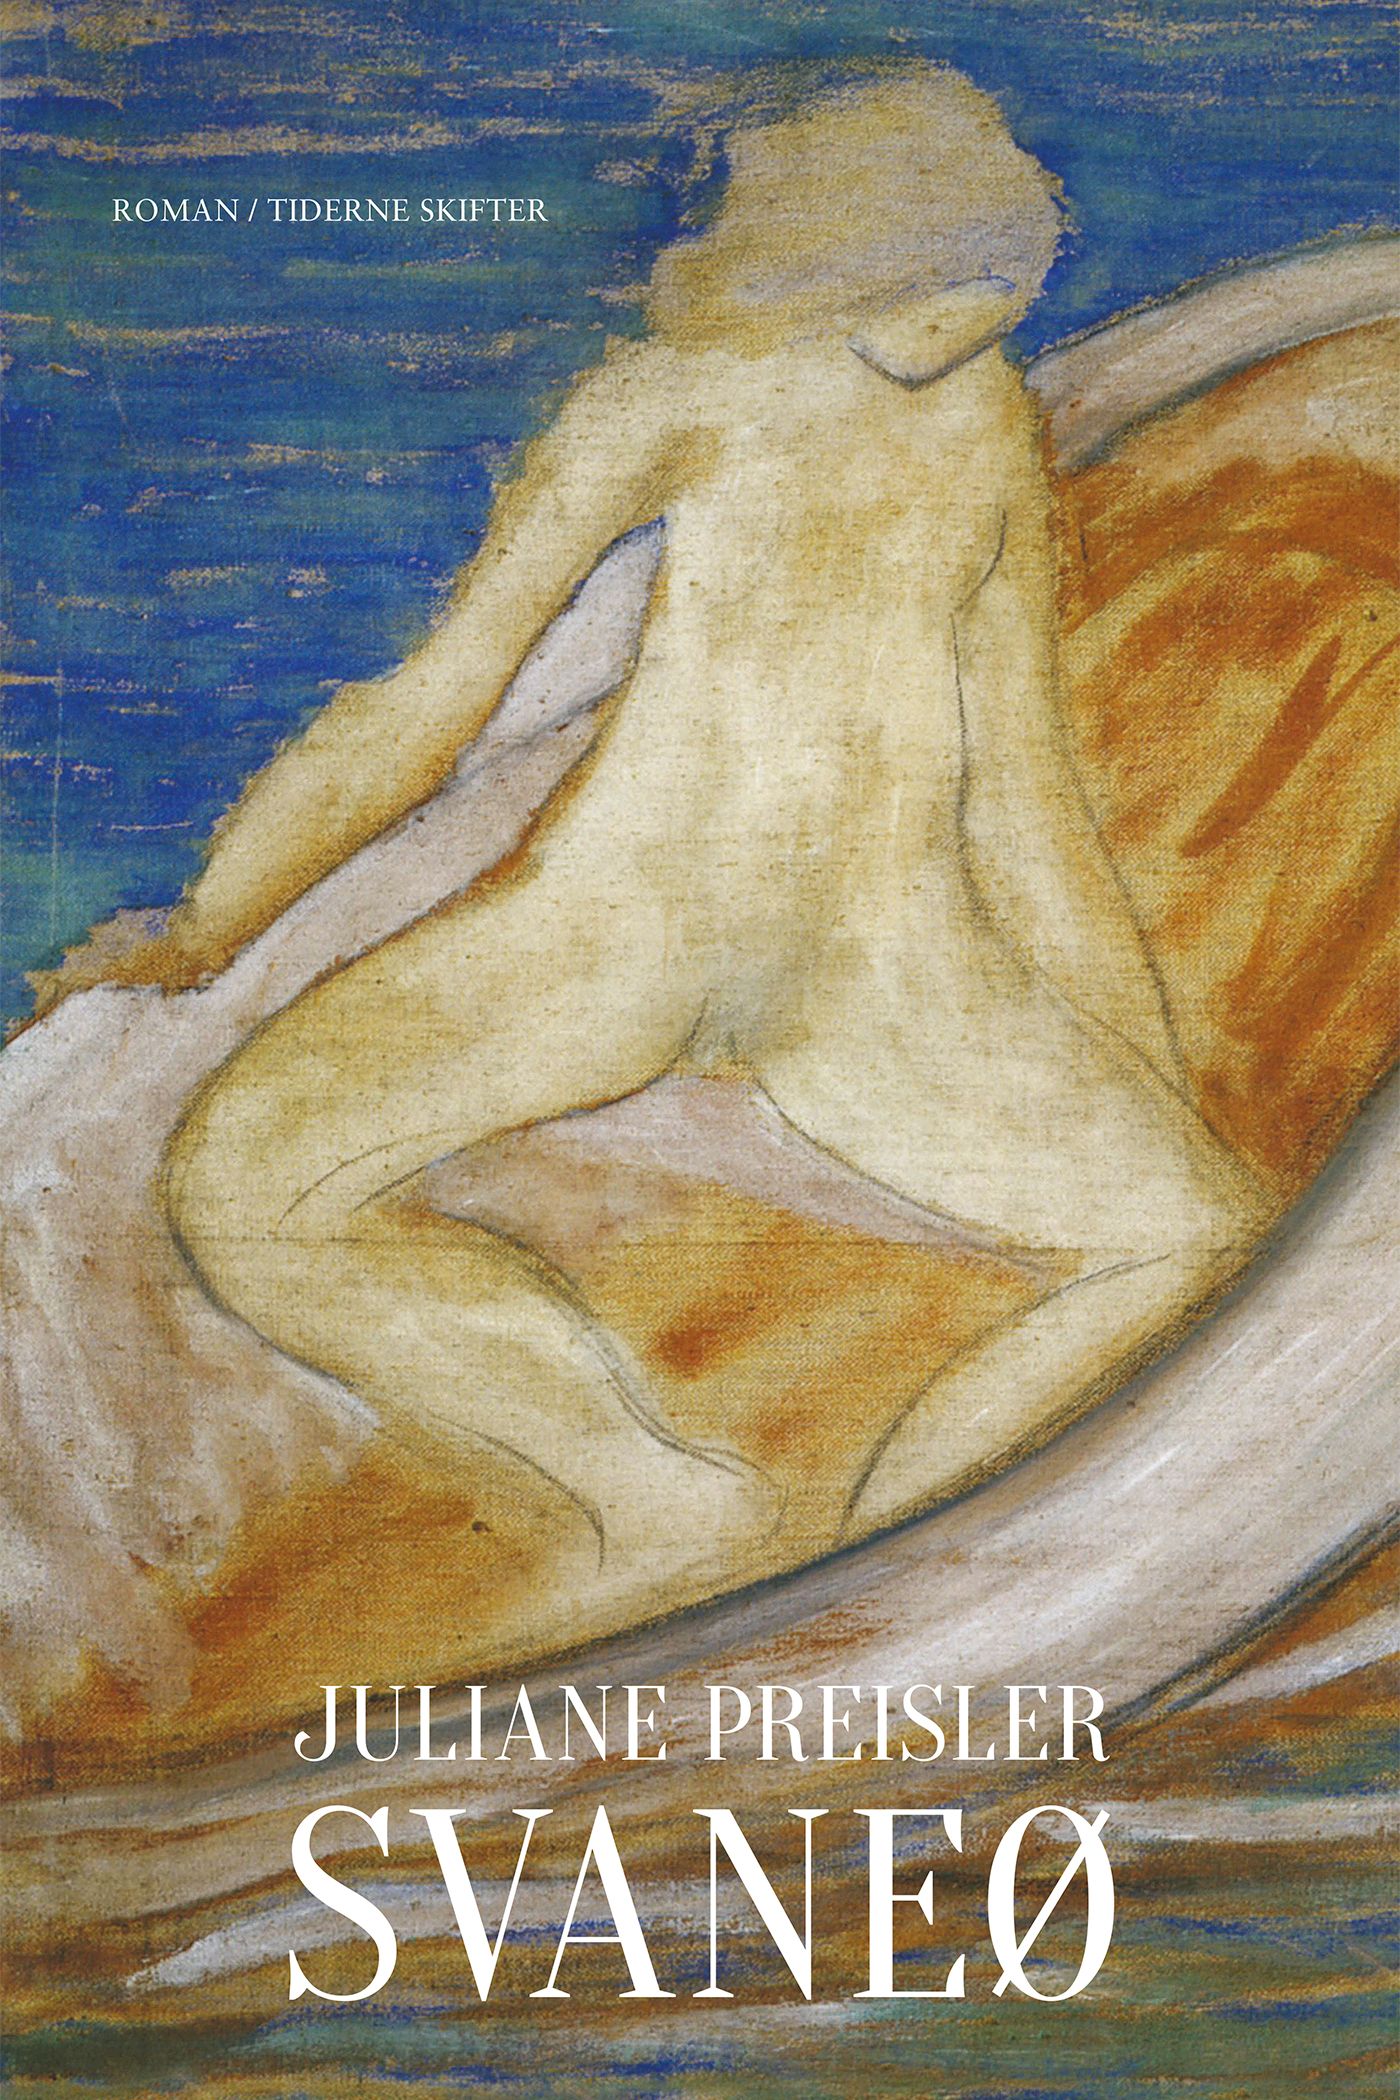 Svaneø, e-bog af Juliane Preisler